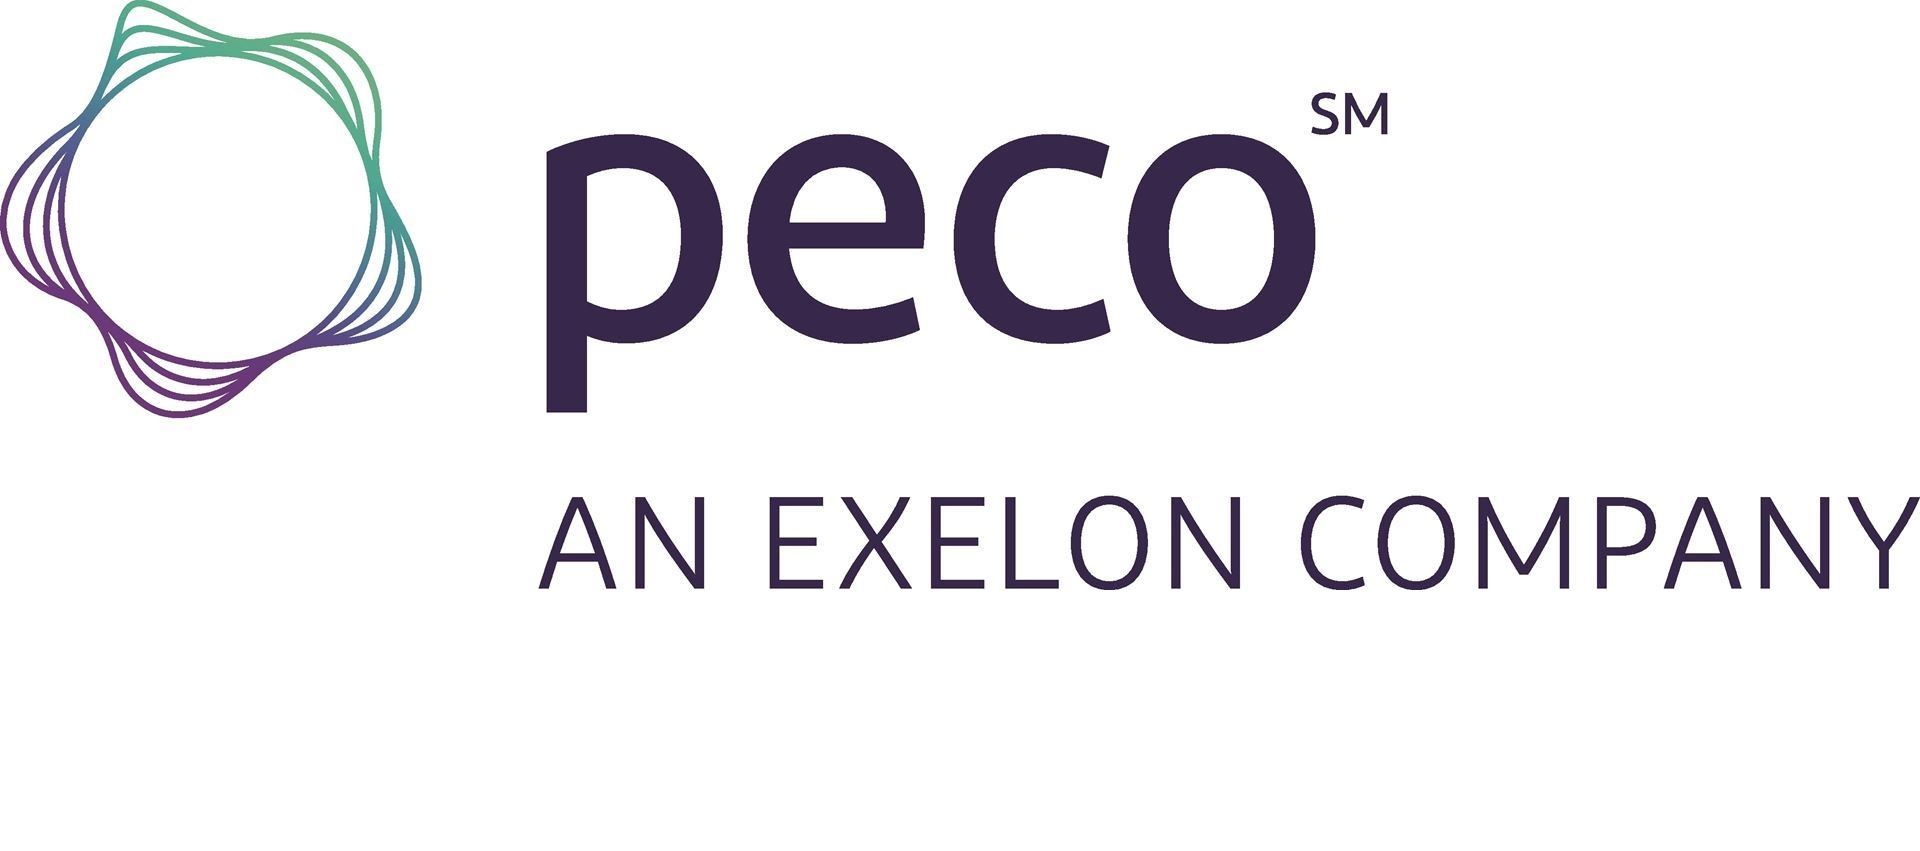 Logo: PECO, an Exelon Company